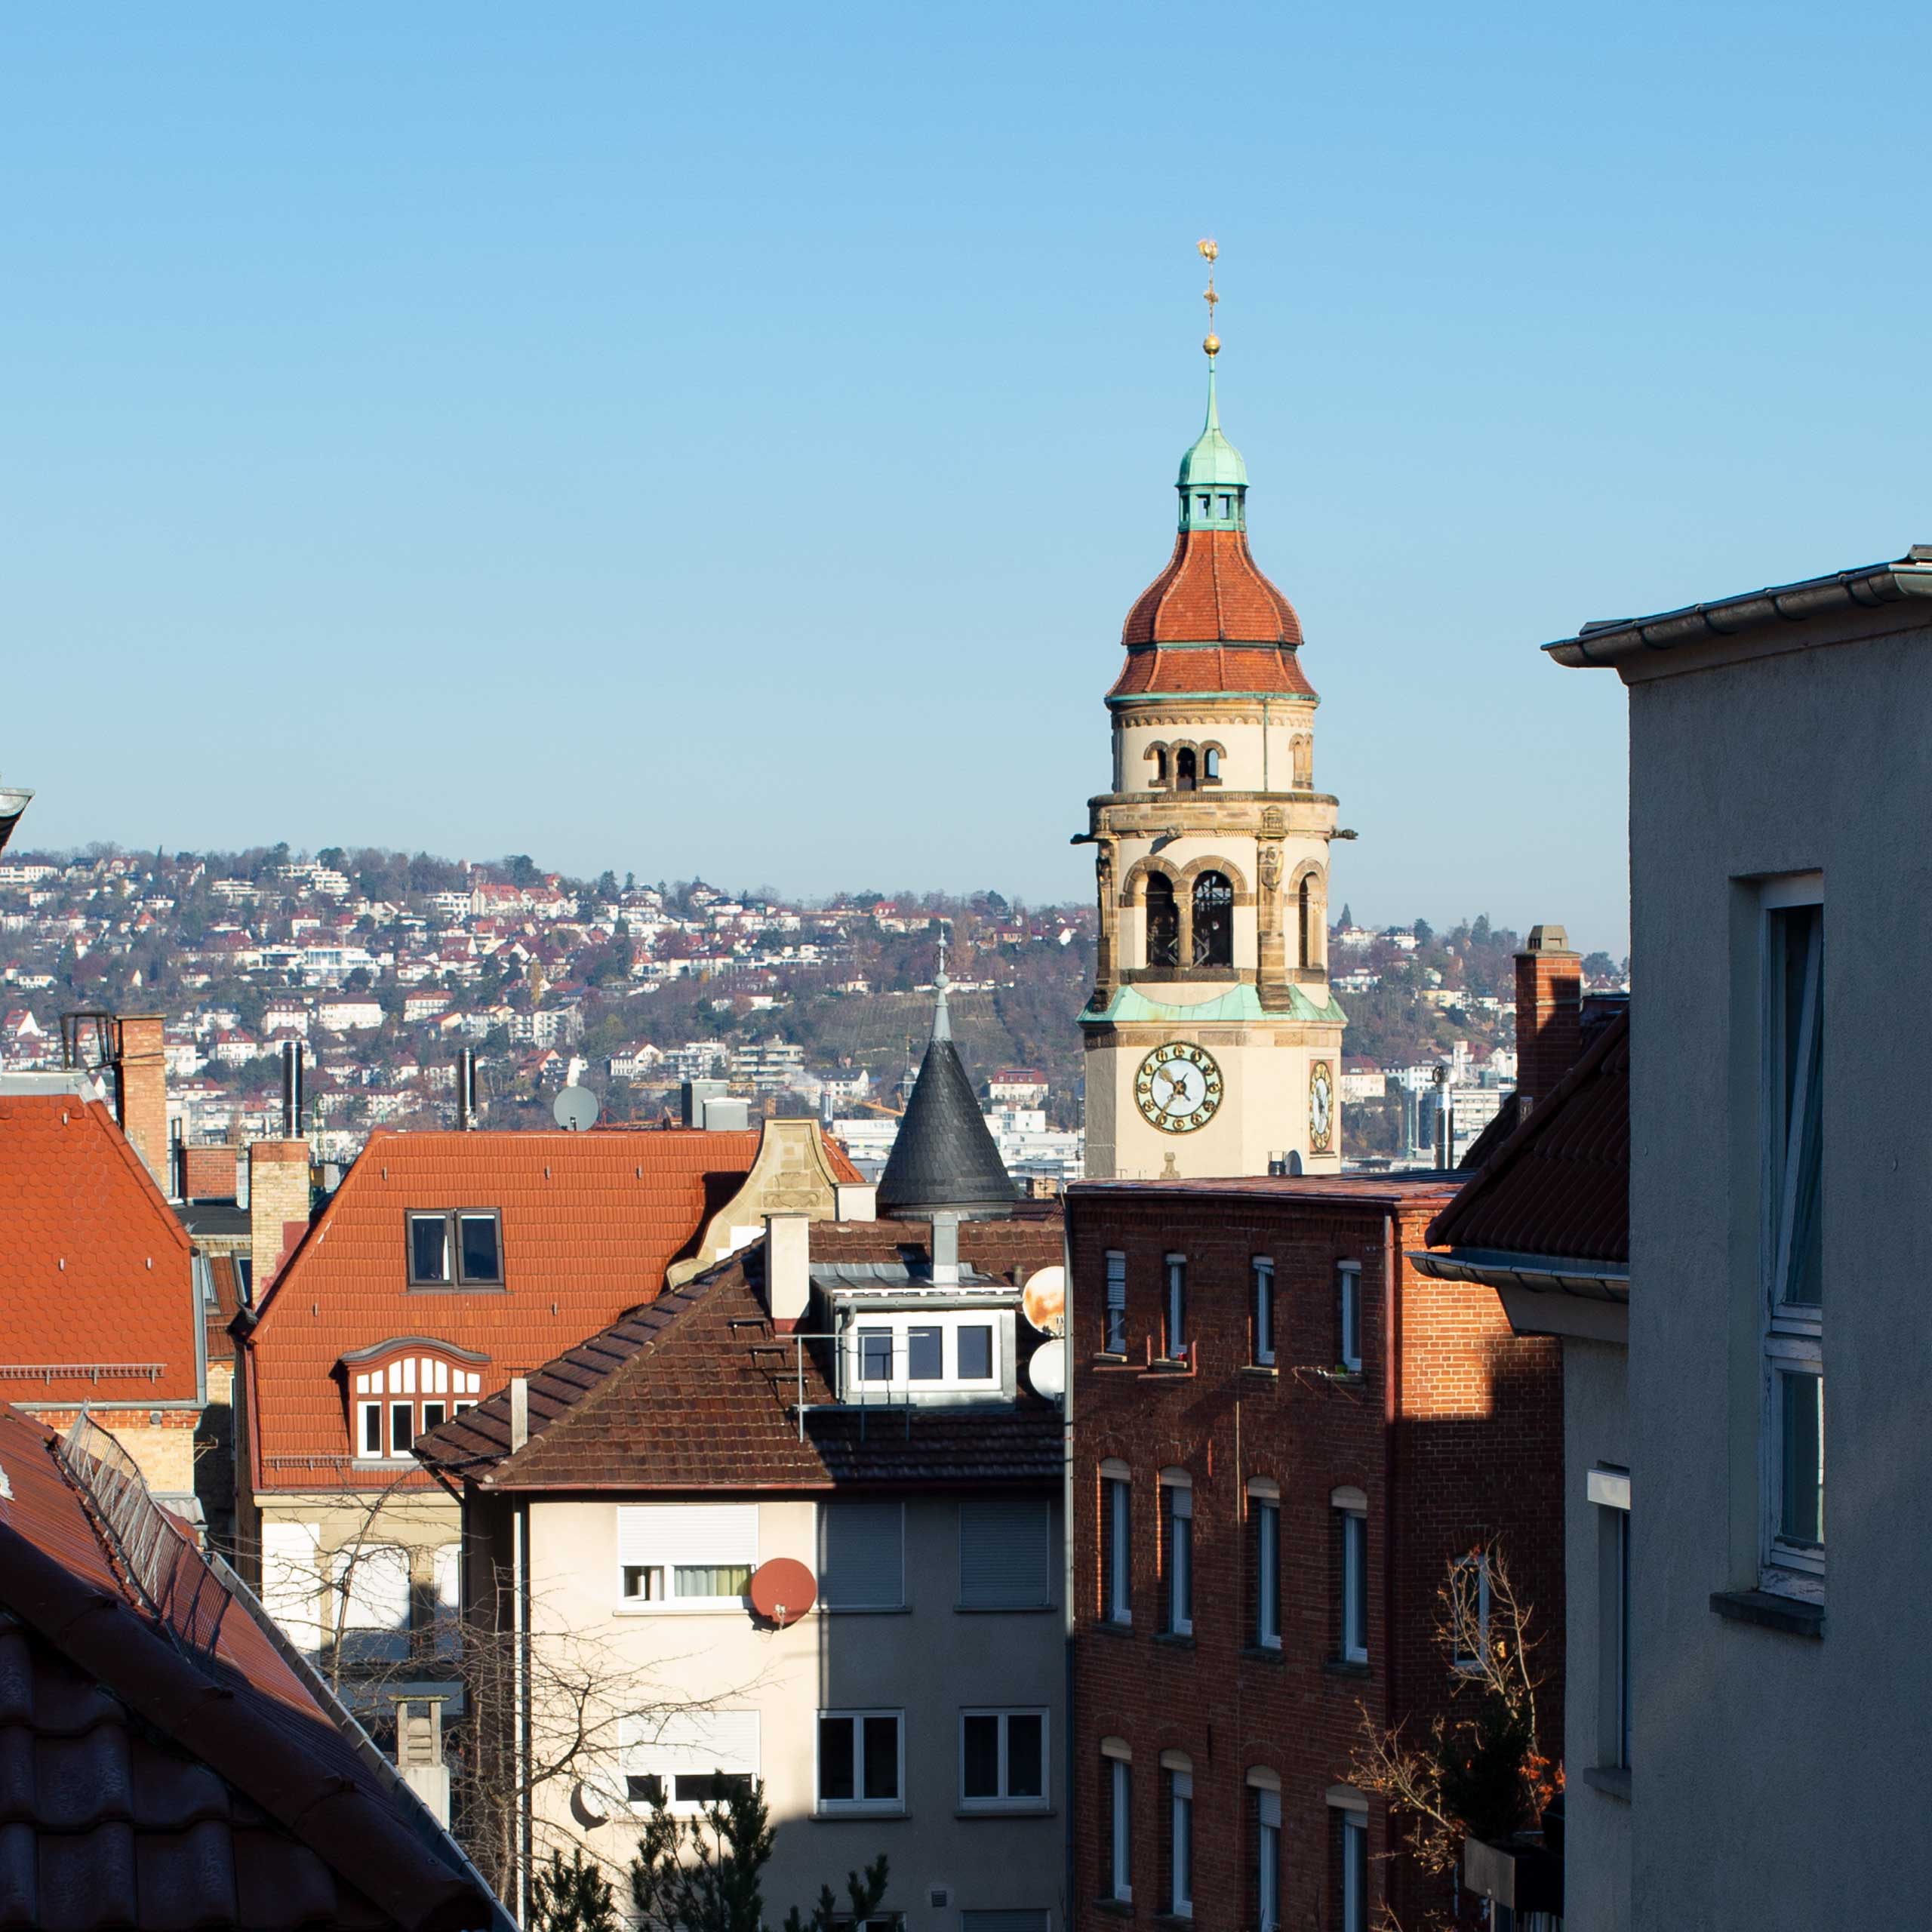 Bürofensterblicke: Stuttgart Lehen | Blick gen Killesberg mit Turm der Markuskirche im Vordergrund und Hinterhöfen. Bild: cc Franziska Köppe | madiko